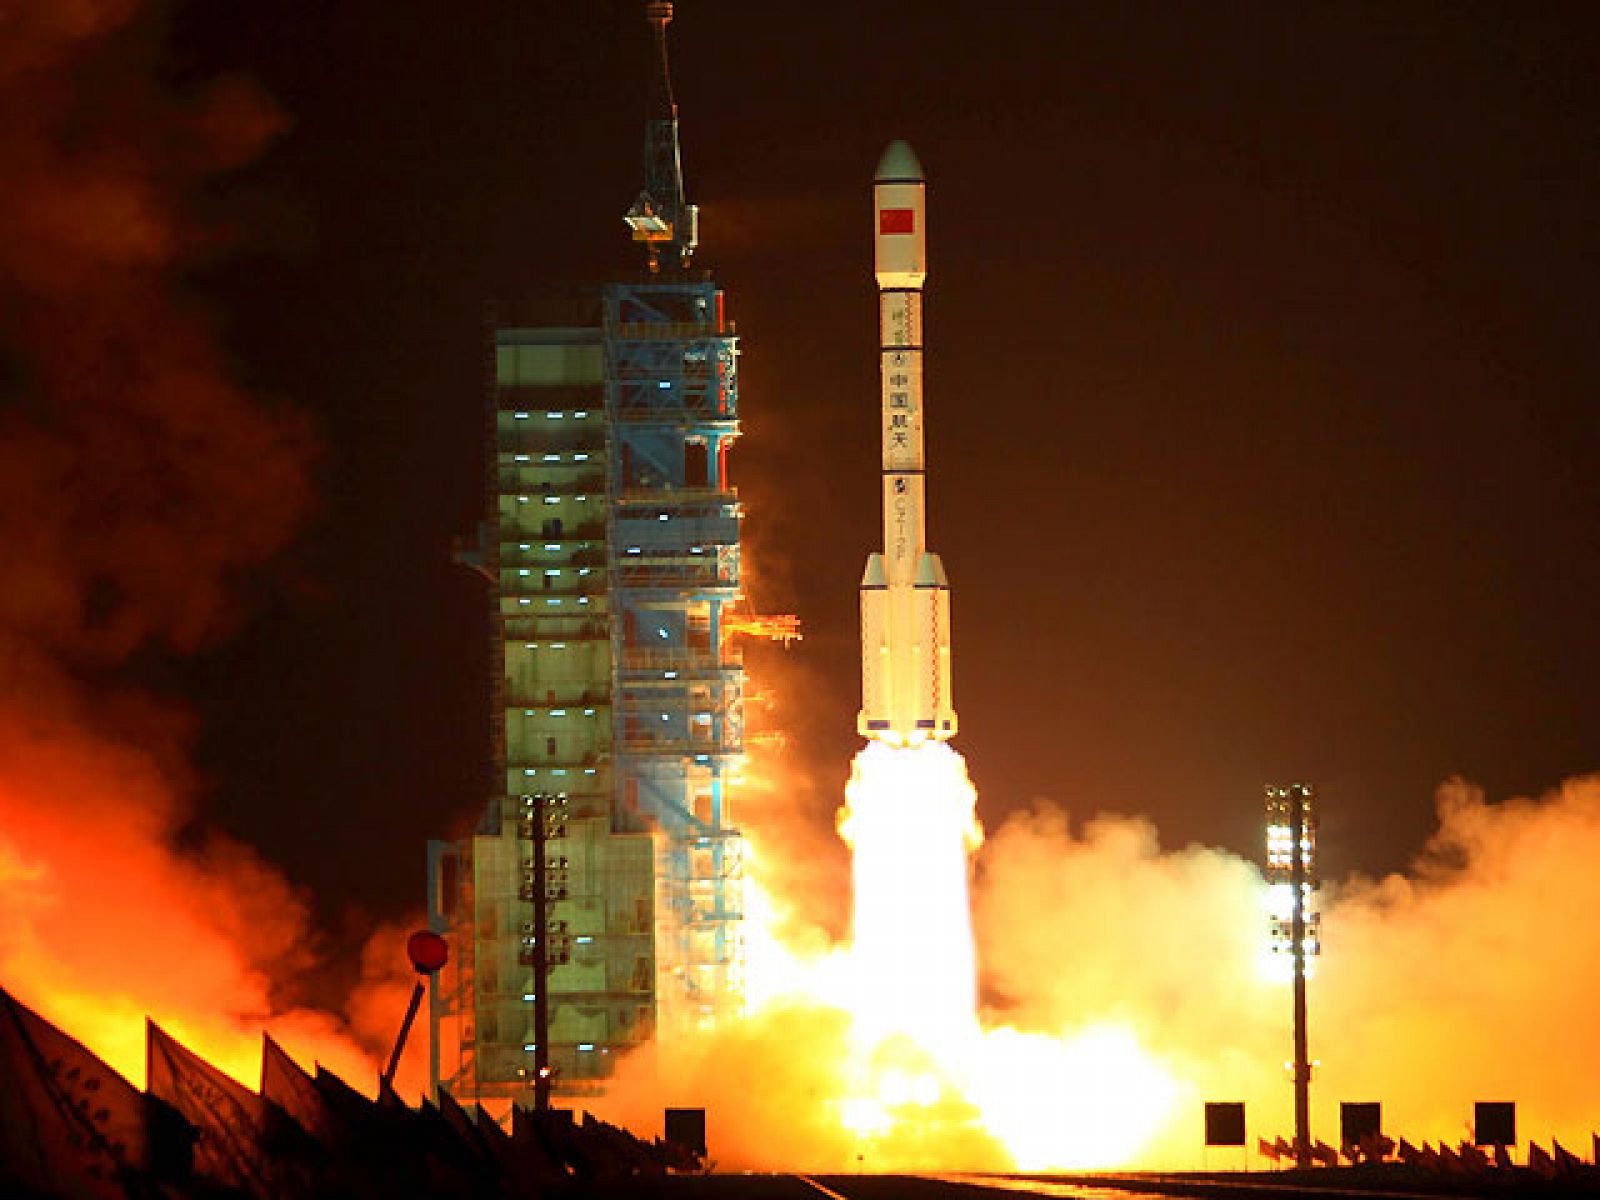   China ha lanzado este jueves un cohete con su primer laboratorio espacial el 'Tiangong-1', que significa 'palacio celestial' en chino. El módulo ha sido puesto en órbita tras su lanzamiento desde la base de Jiuquan, en el desierto del Gobi.